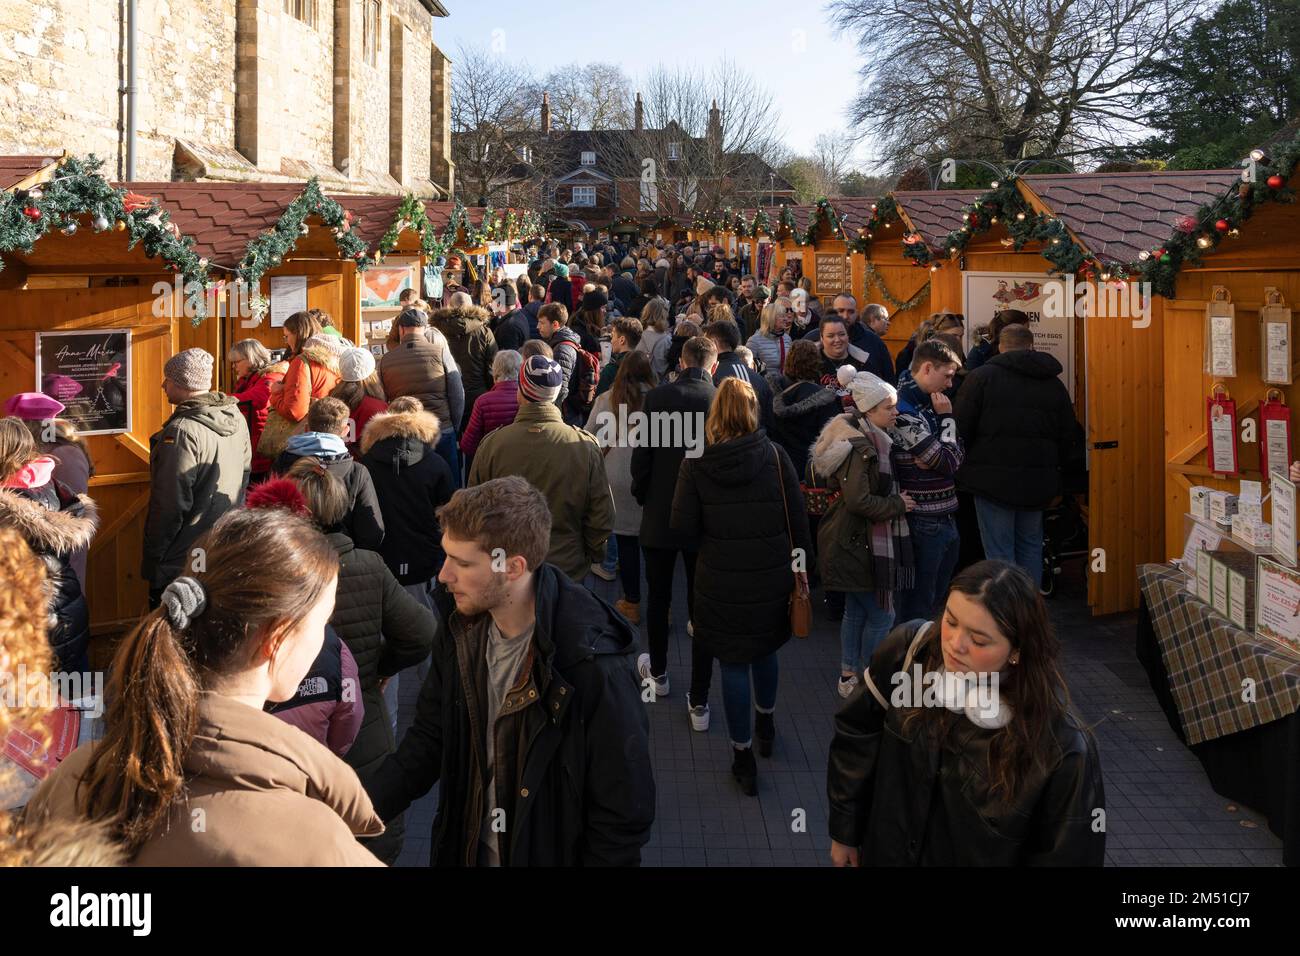 Gli amanti dello shopping natalizio al mercatino di Natale di Winchester con chalet in legno accanto alle mura medievali storiche della cattedrale gotica di Winchester, Inghilterra, Regno Unito Foto Stock